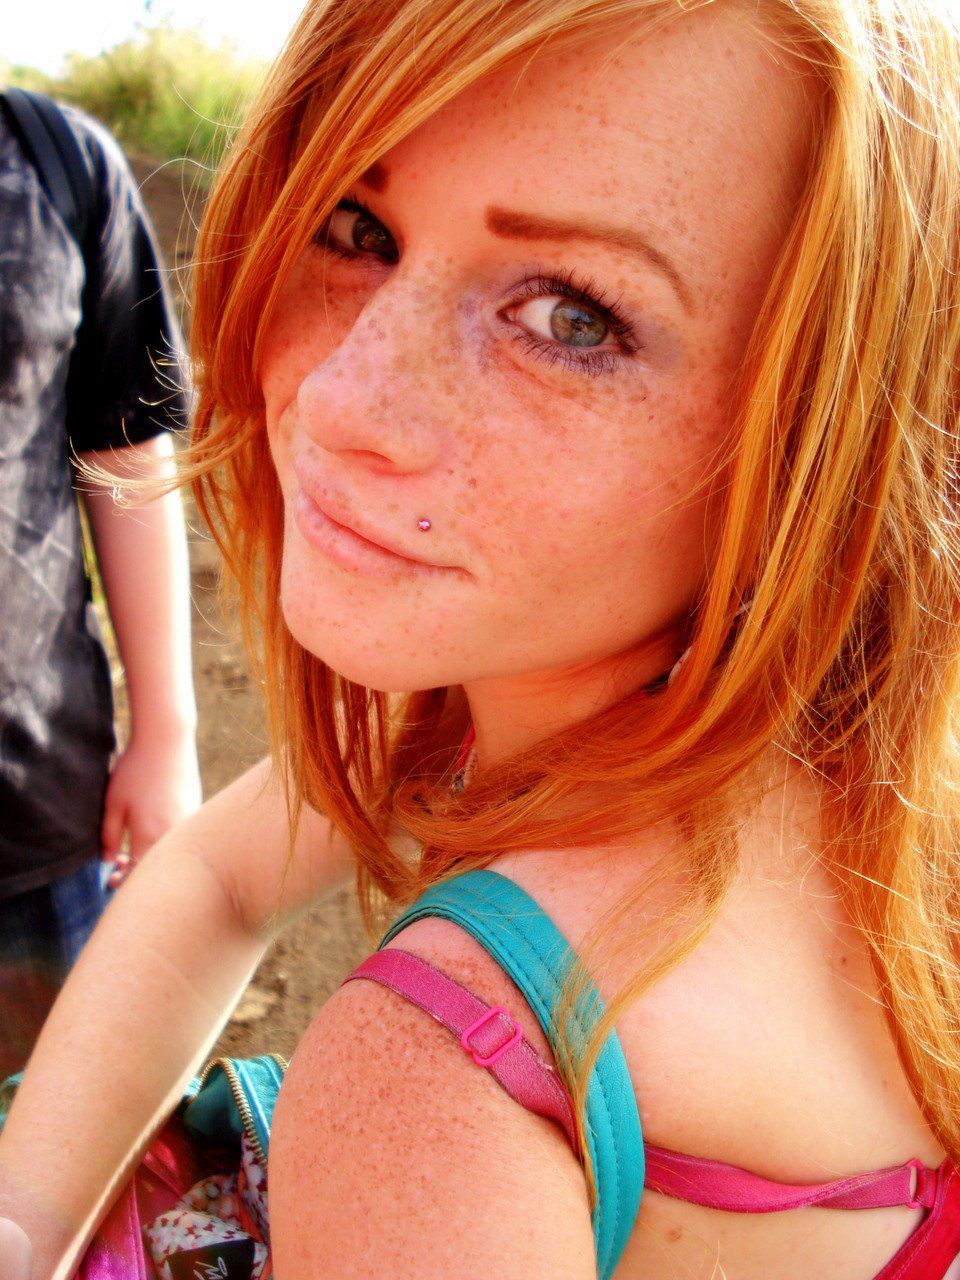 Freckled slut nude selfie